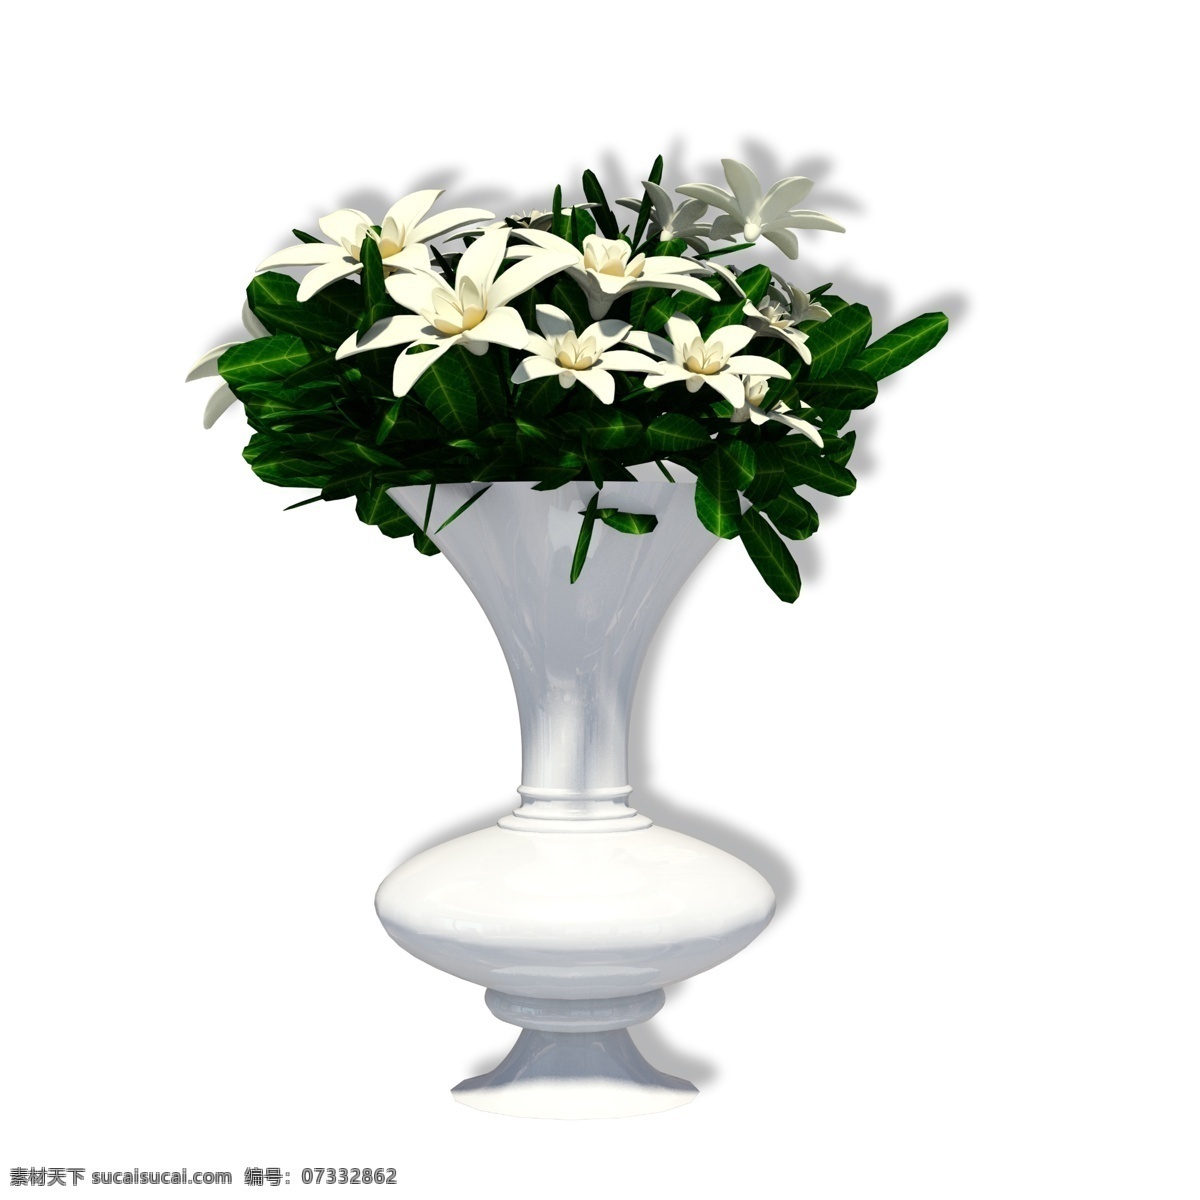 白色 陶瓷 花瓶 插花 瓷器 装饰